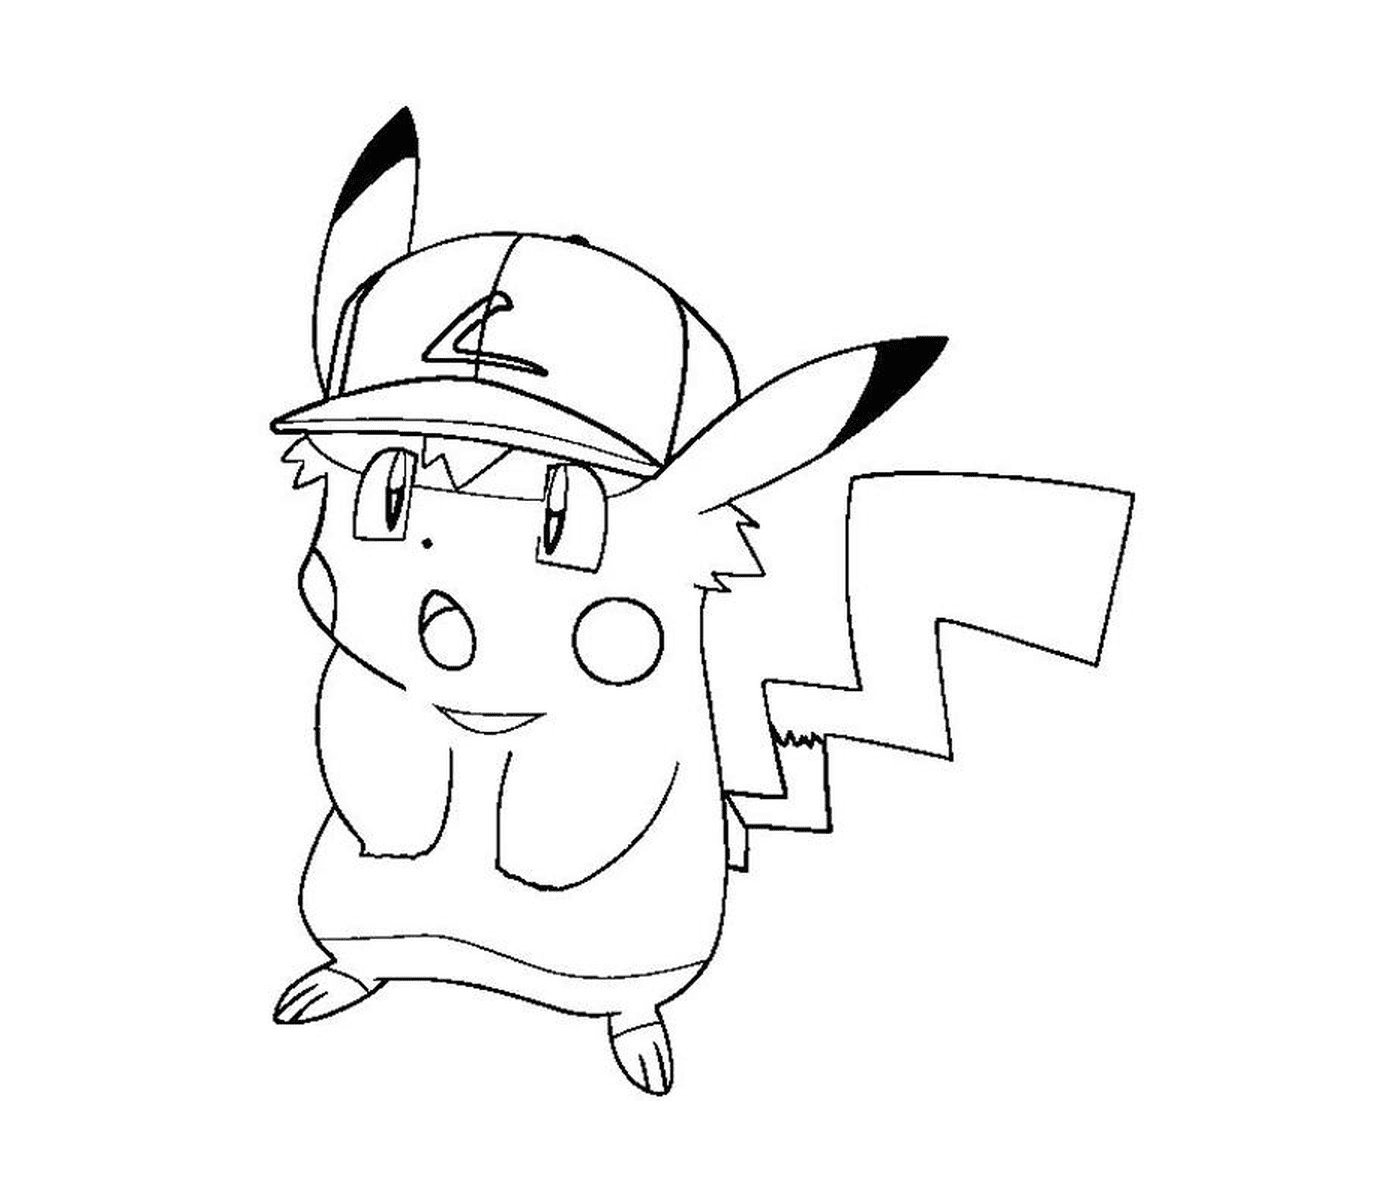  Pikachu stilisiert mit einer Kappe 